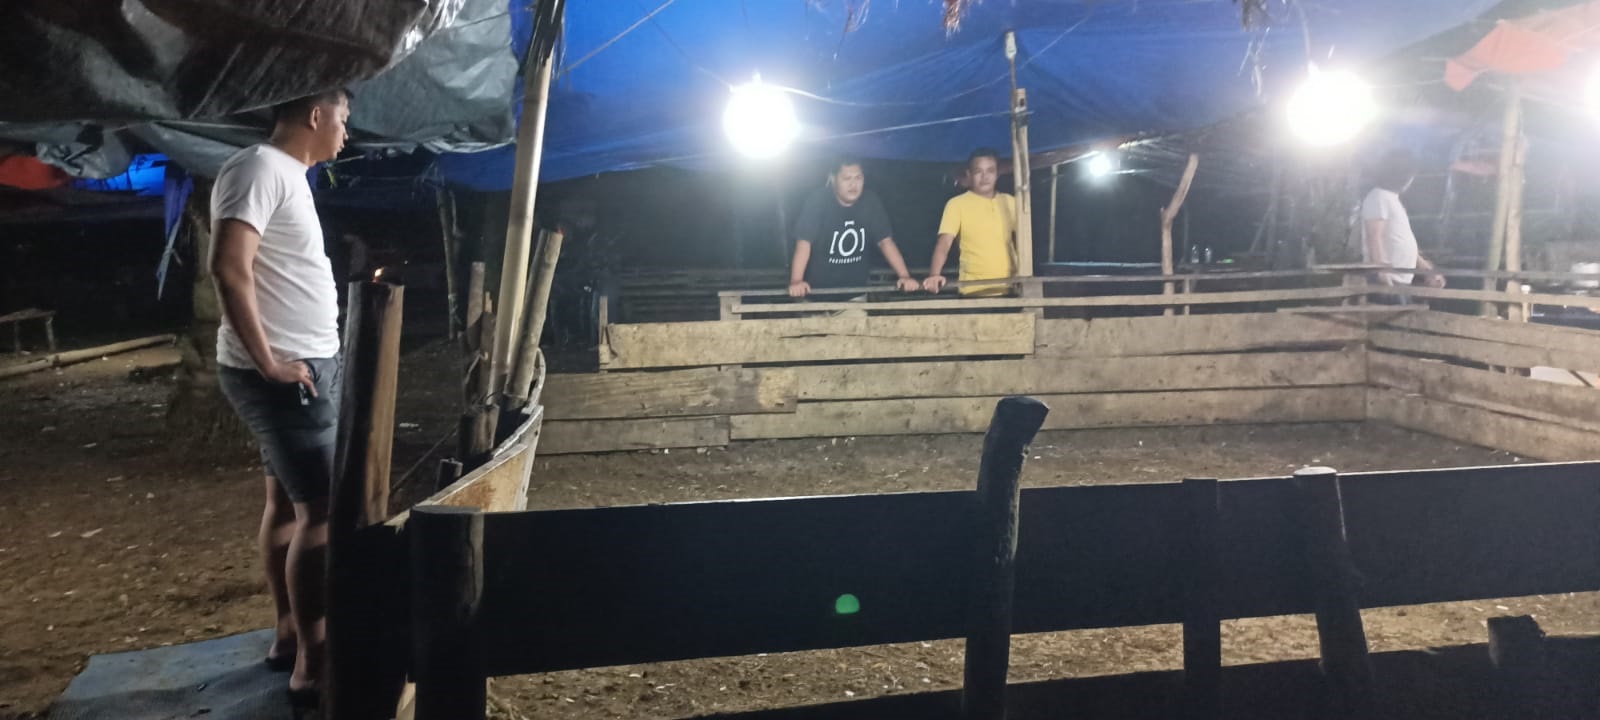 Sssttt…Ada Arena Judi Dekat Kantor Bupati Bengkulu Selatan: Polisi Datang, Hanya Ditemukan 4 Bangkai Ayam